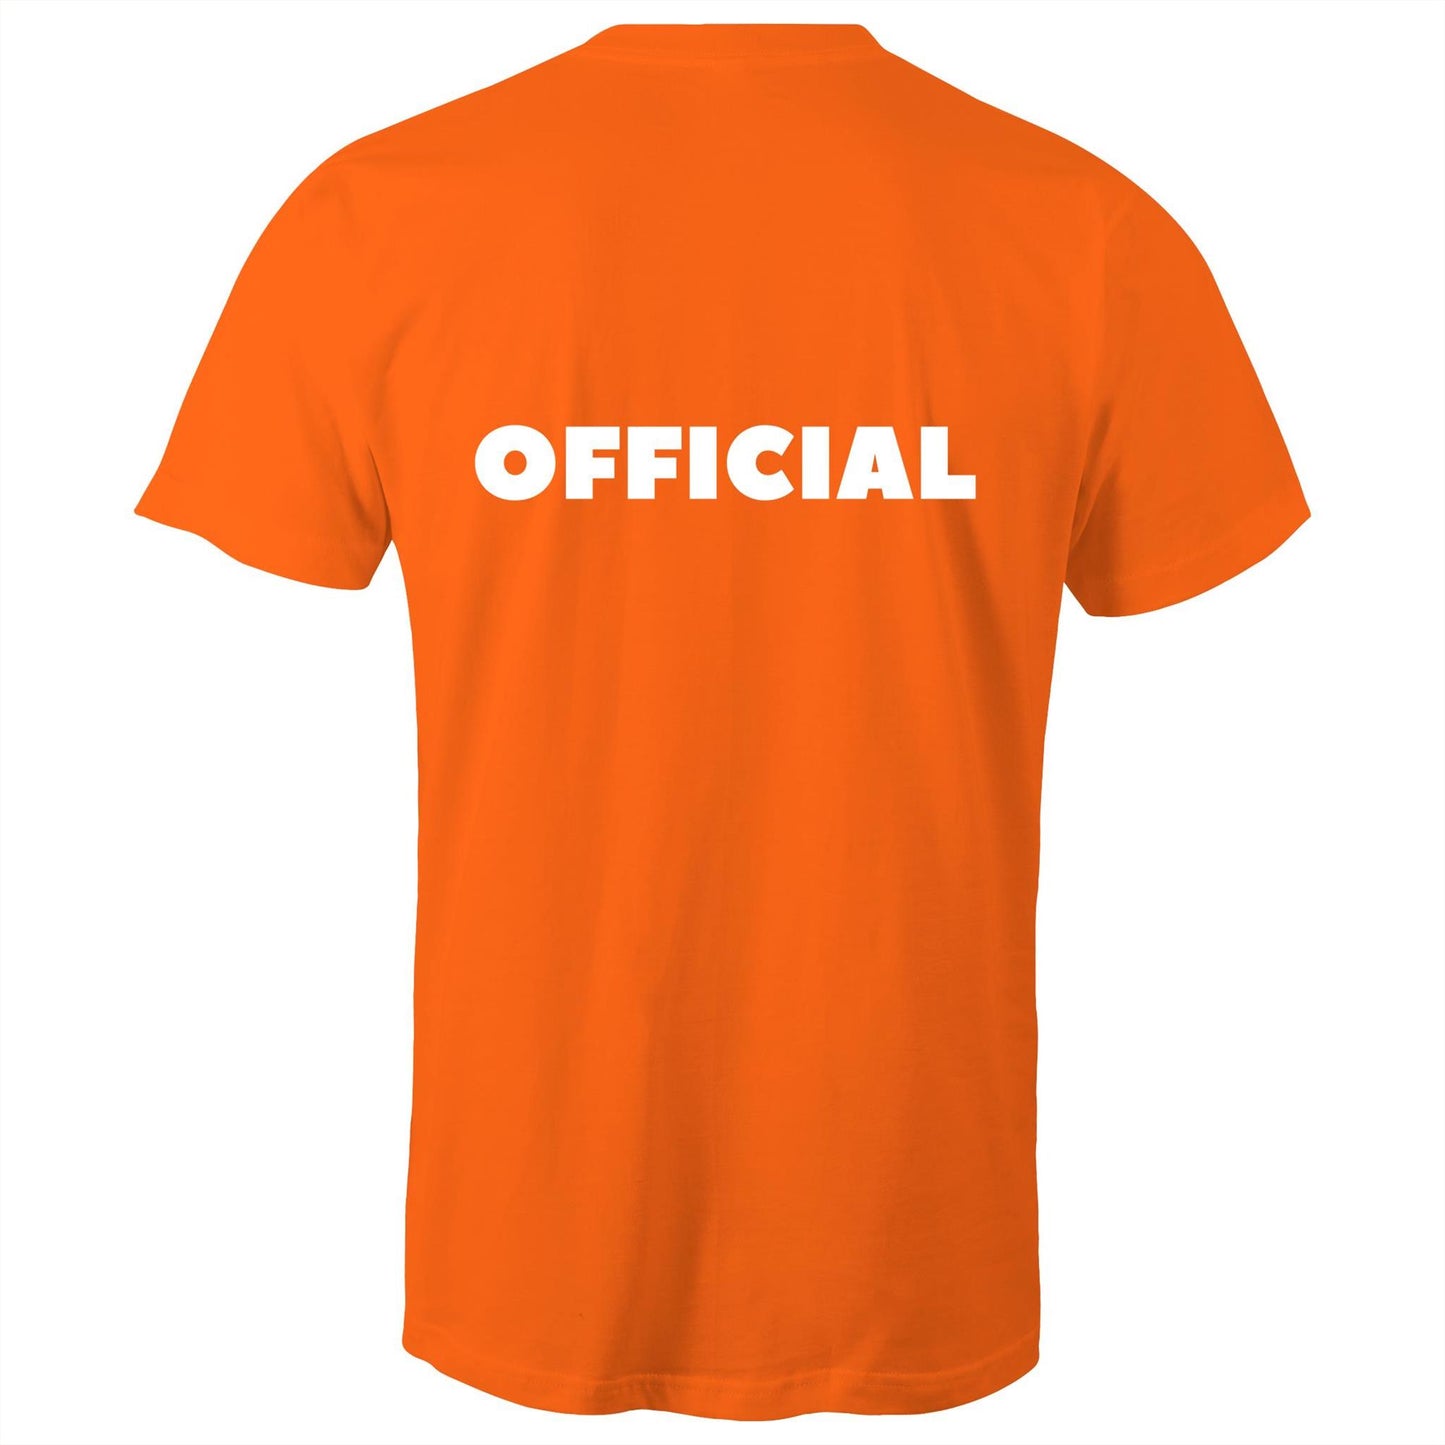 OFFICIAL - Unisex T-Shirt